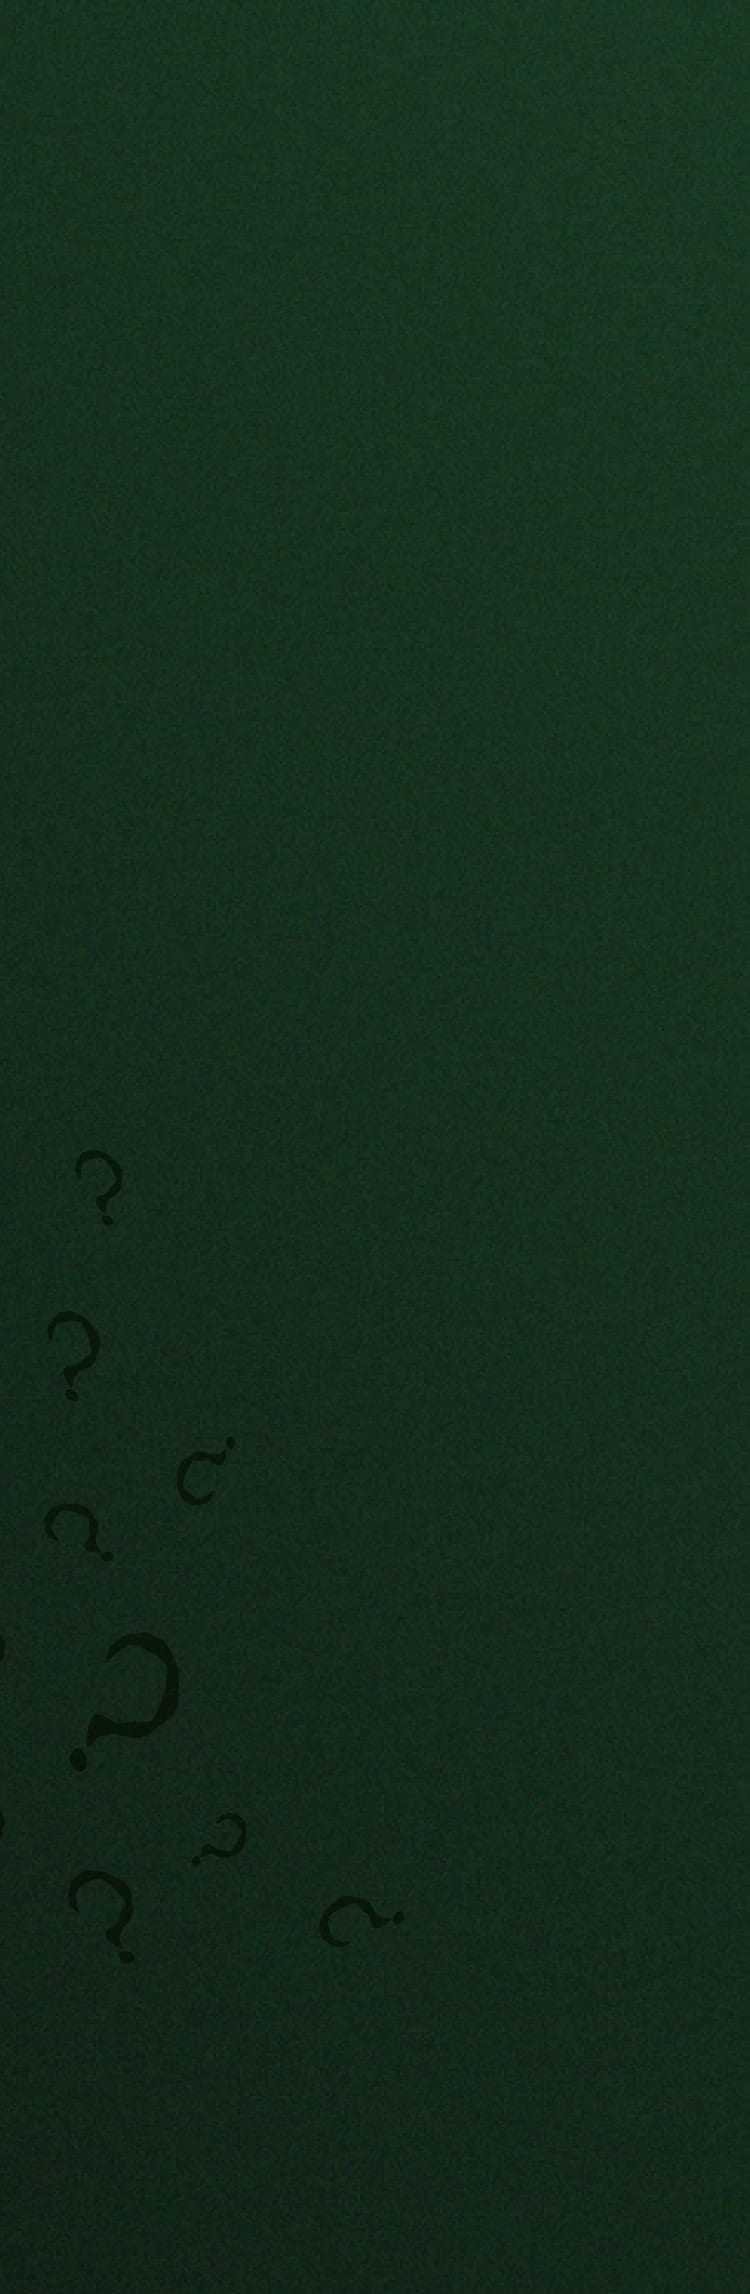 Un fondo verde con adornado con signo de interrogación y el reloj Riddler de Batman x Fossil. 